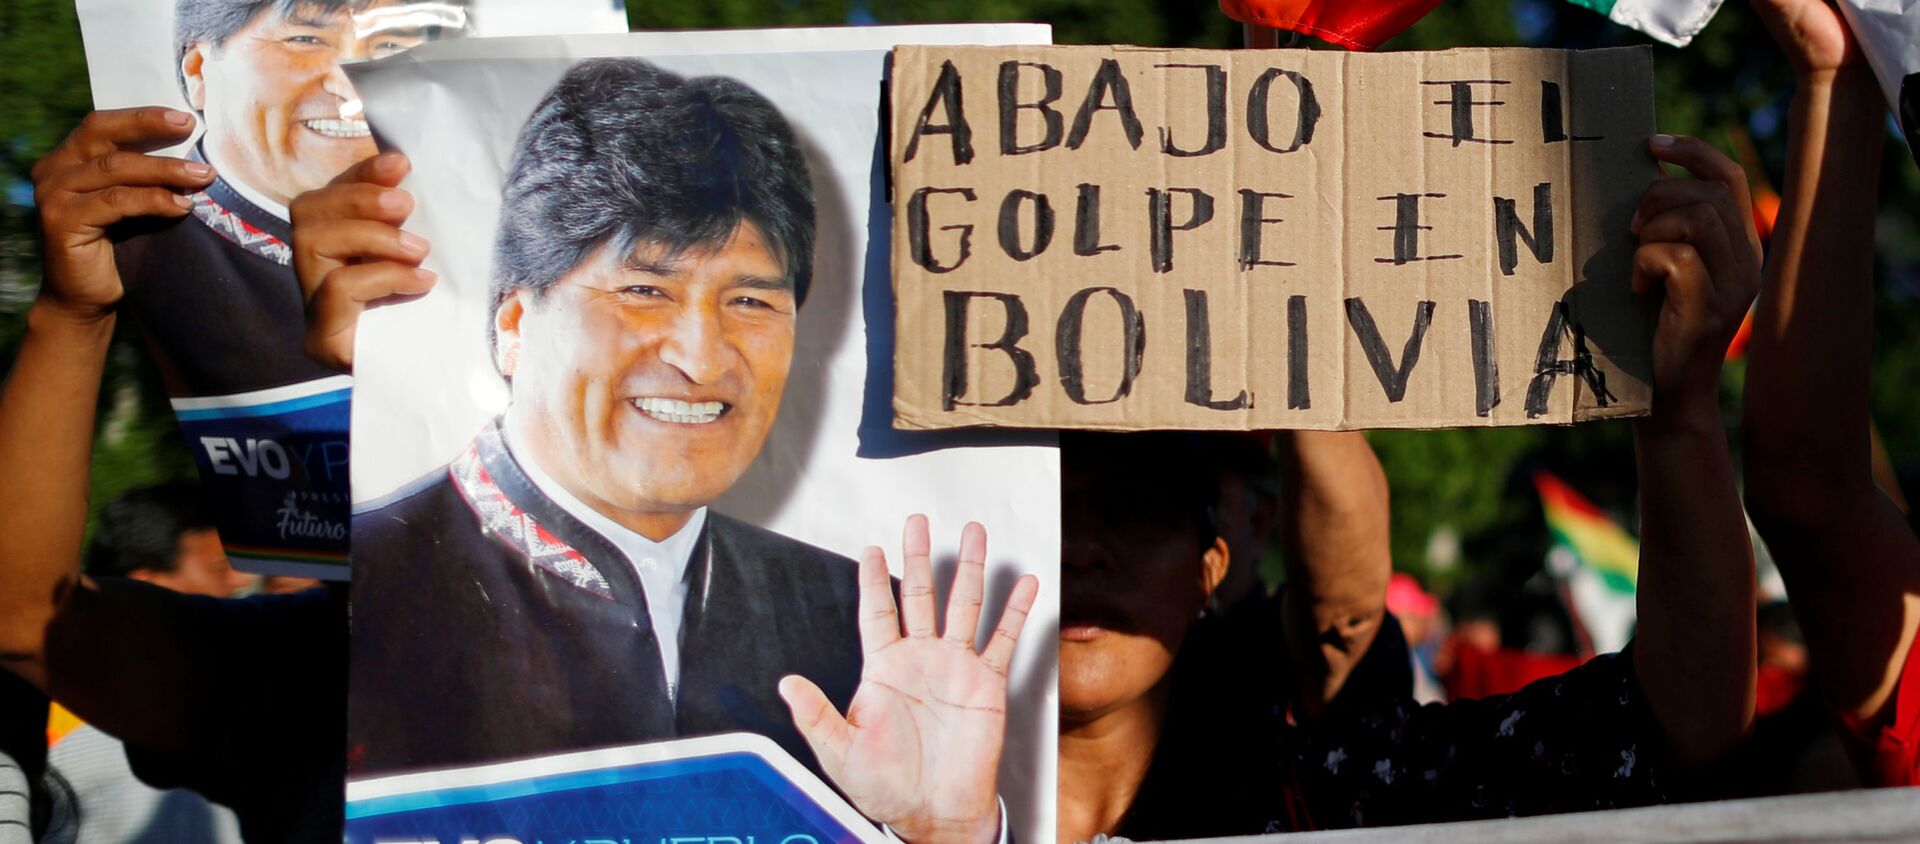 Partidarios de Evo Morales en Bolivia - Sputnik Mundo, 1920, 26.11.2019